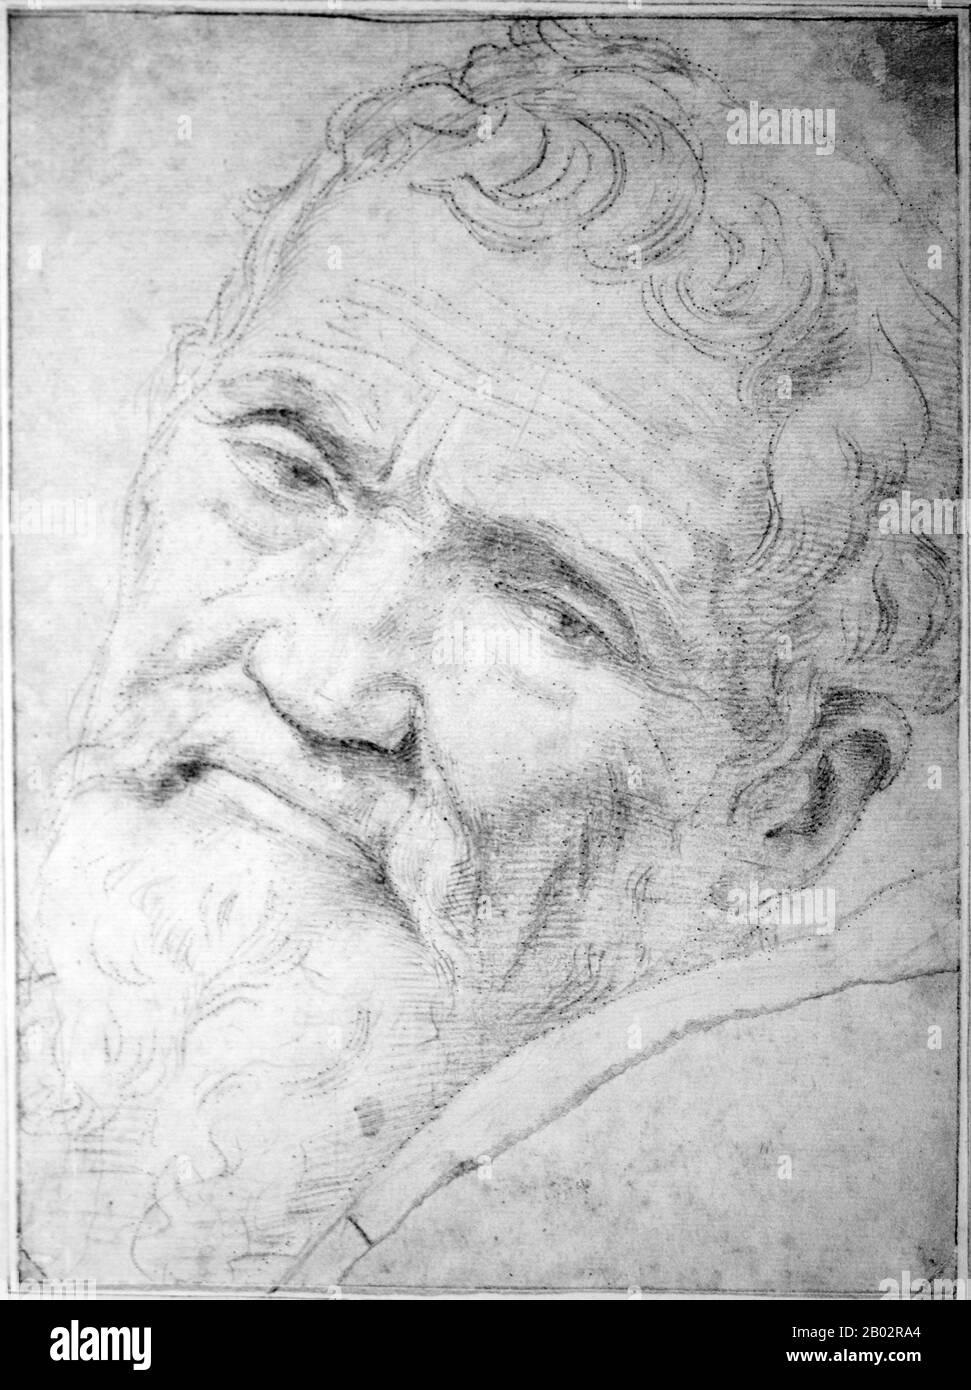 Michelangelo di Lodovico Buonarroti Simoni (6 marzo 1475 – 18 febbraio 1564), comunemente noto come Michelangelo, è stato scultore, pittore, architetto, poeta, E ingegnere dell'Alto Rinascimento che esercitò un'influenza senza pari sullo sviluppo dell'arte occidentale Considerato il più grande artista vivente della sua vita, da allora si è tenuto come uno dei più grandi artisti di tutti i tempi. Pur facendo pochi incursioni al di là delle arti, la sua versatilità nelle discipline che ha assunto era di un ordine così elevato che è spesso considerato un concorrente per il titolo dell'archetipico rinascimentale, alo Foto Stock